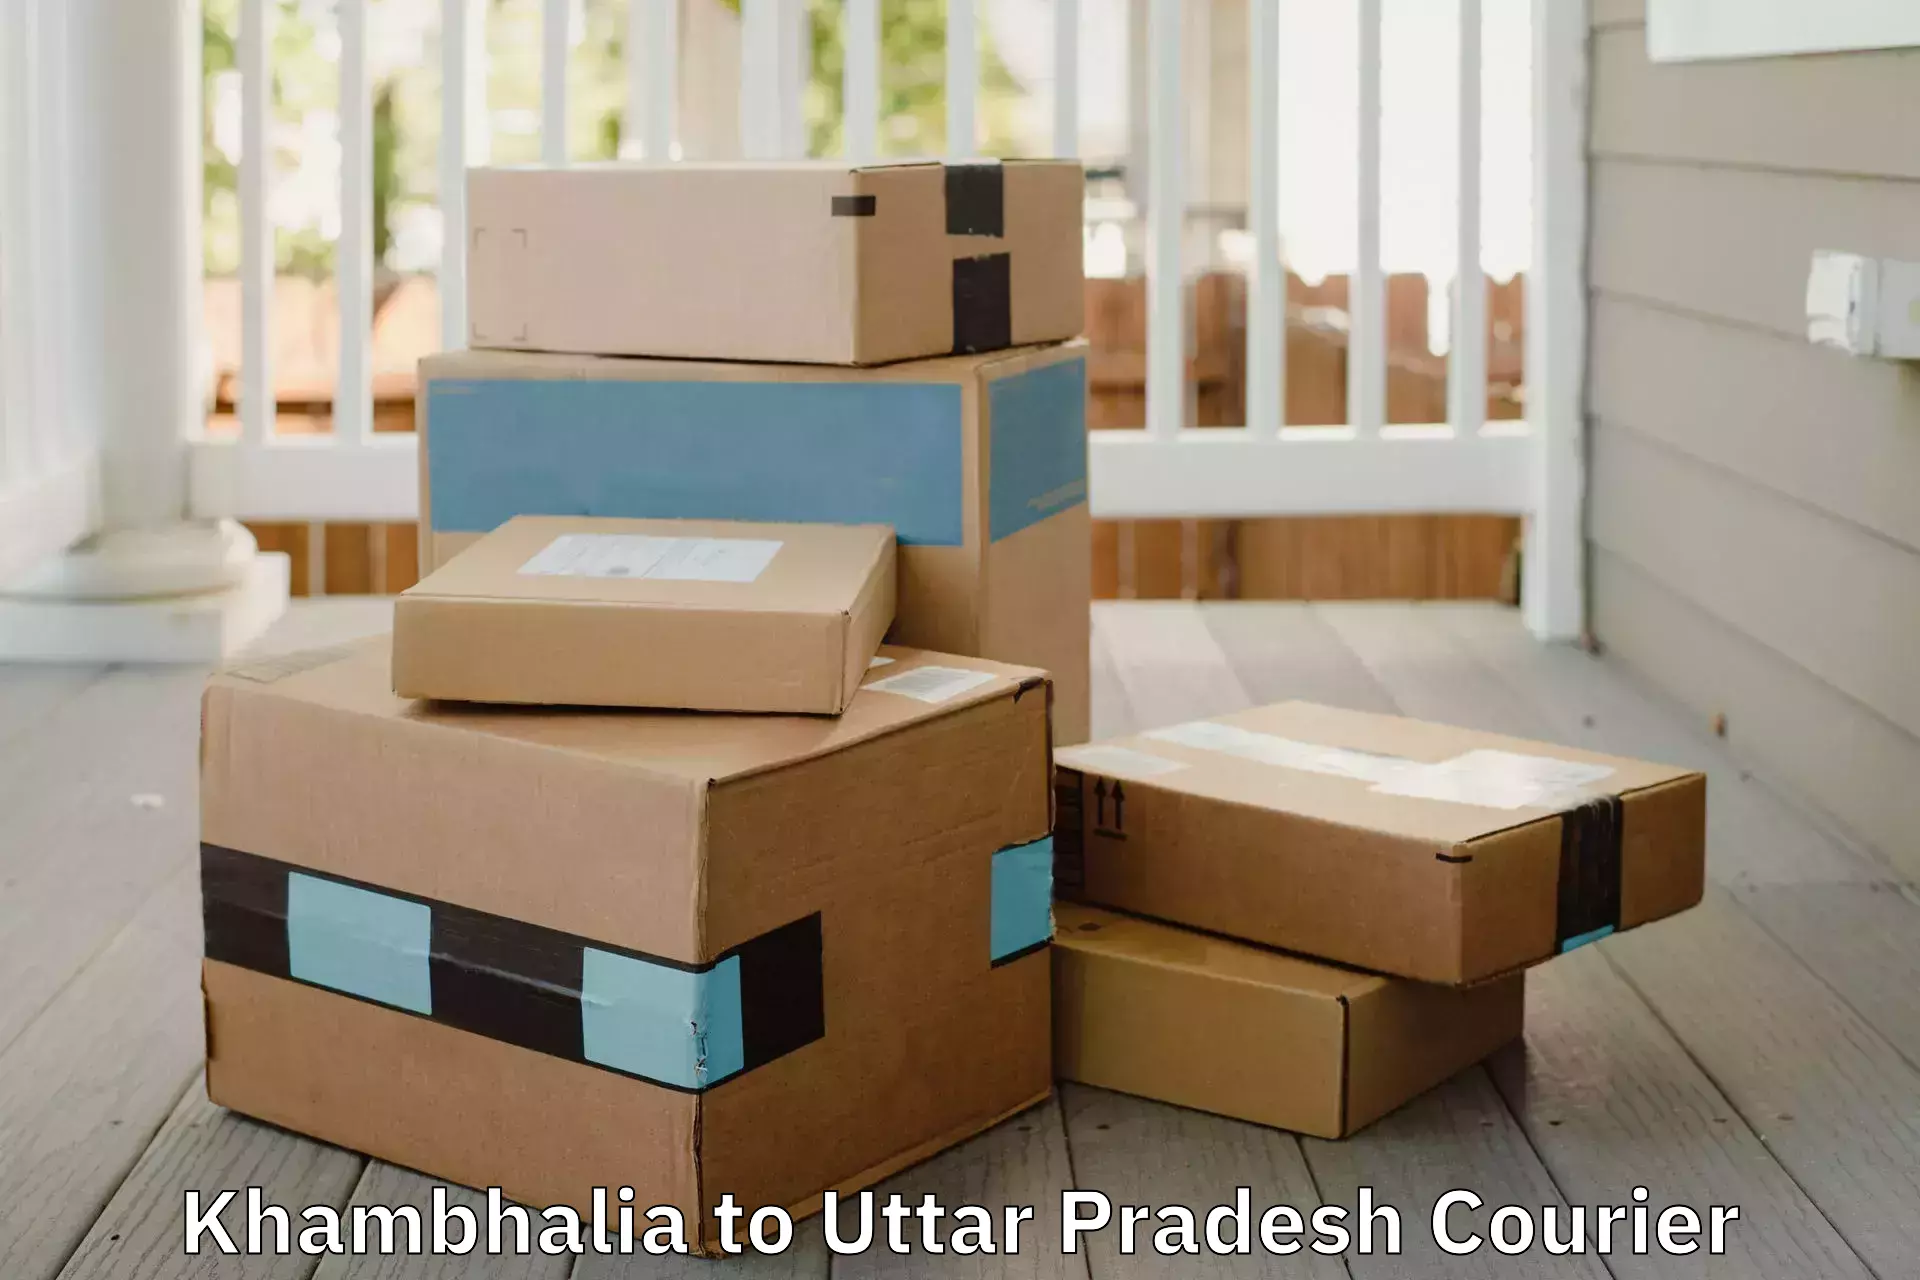 Packing and moving services Khambhalia to Amethi